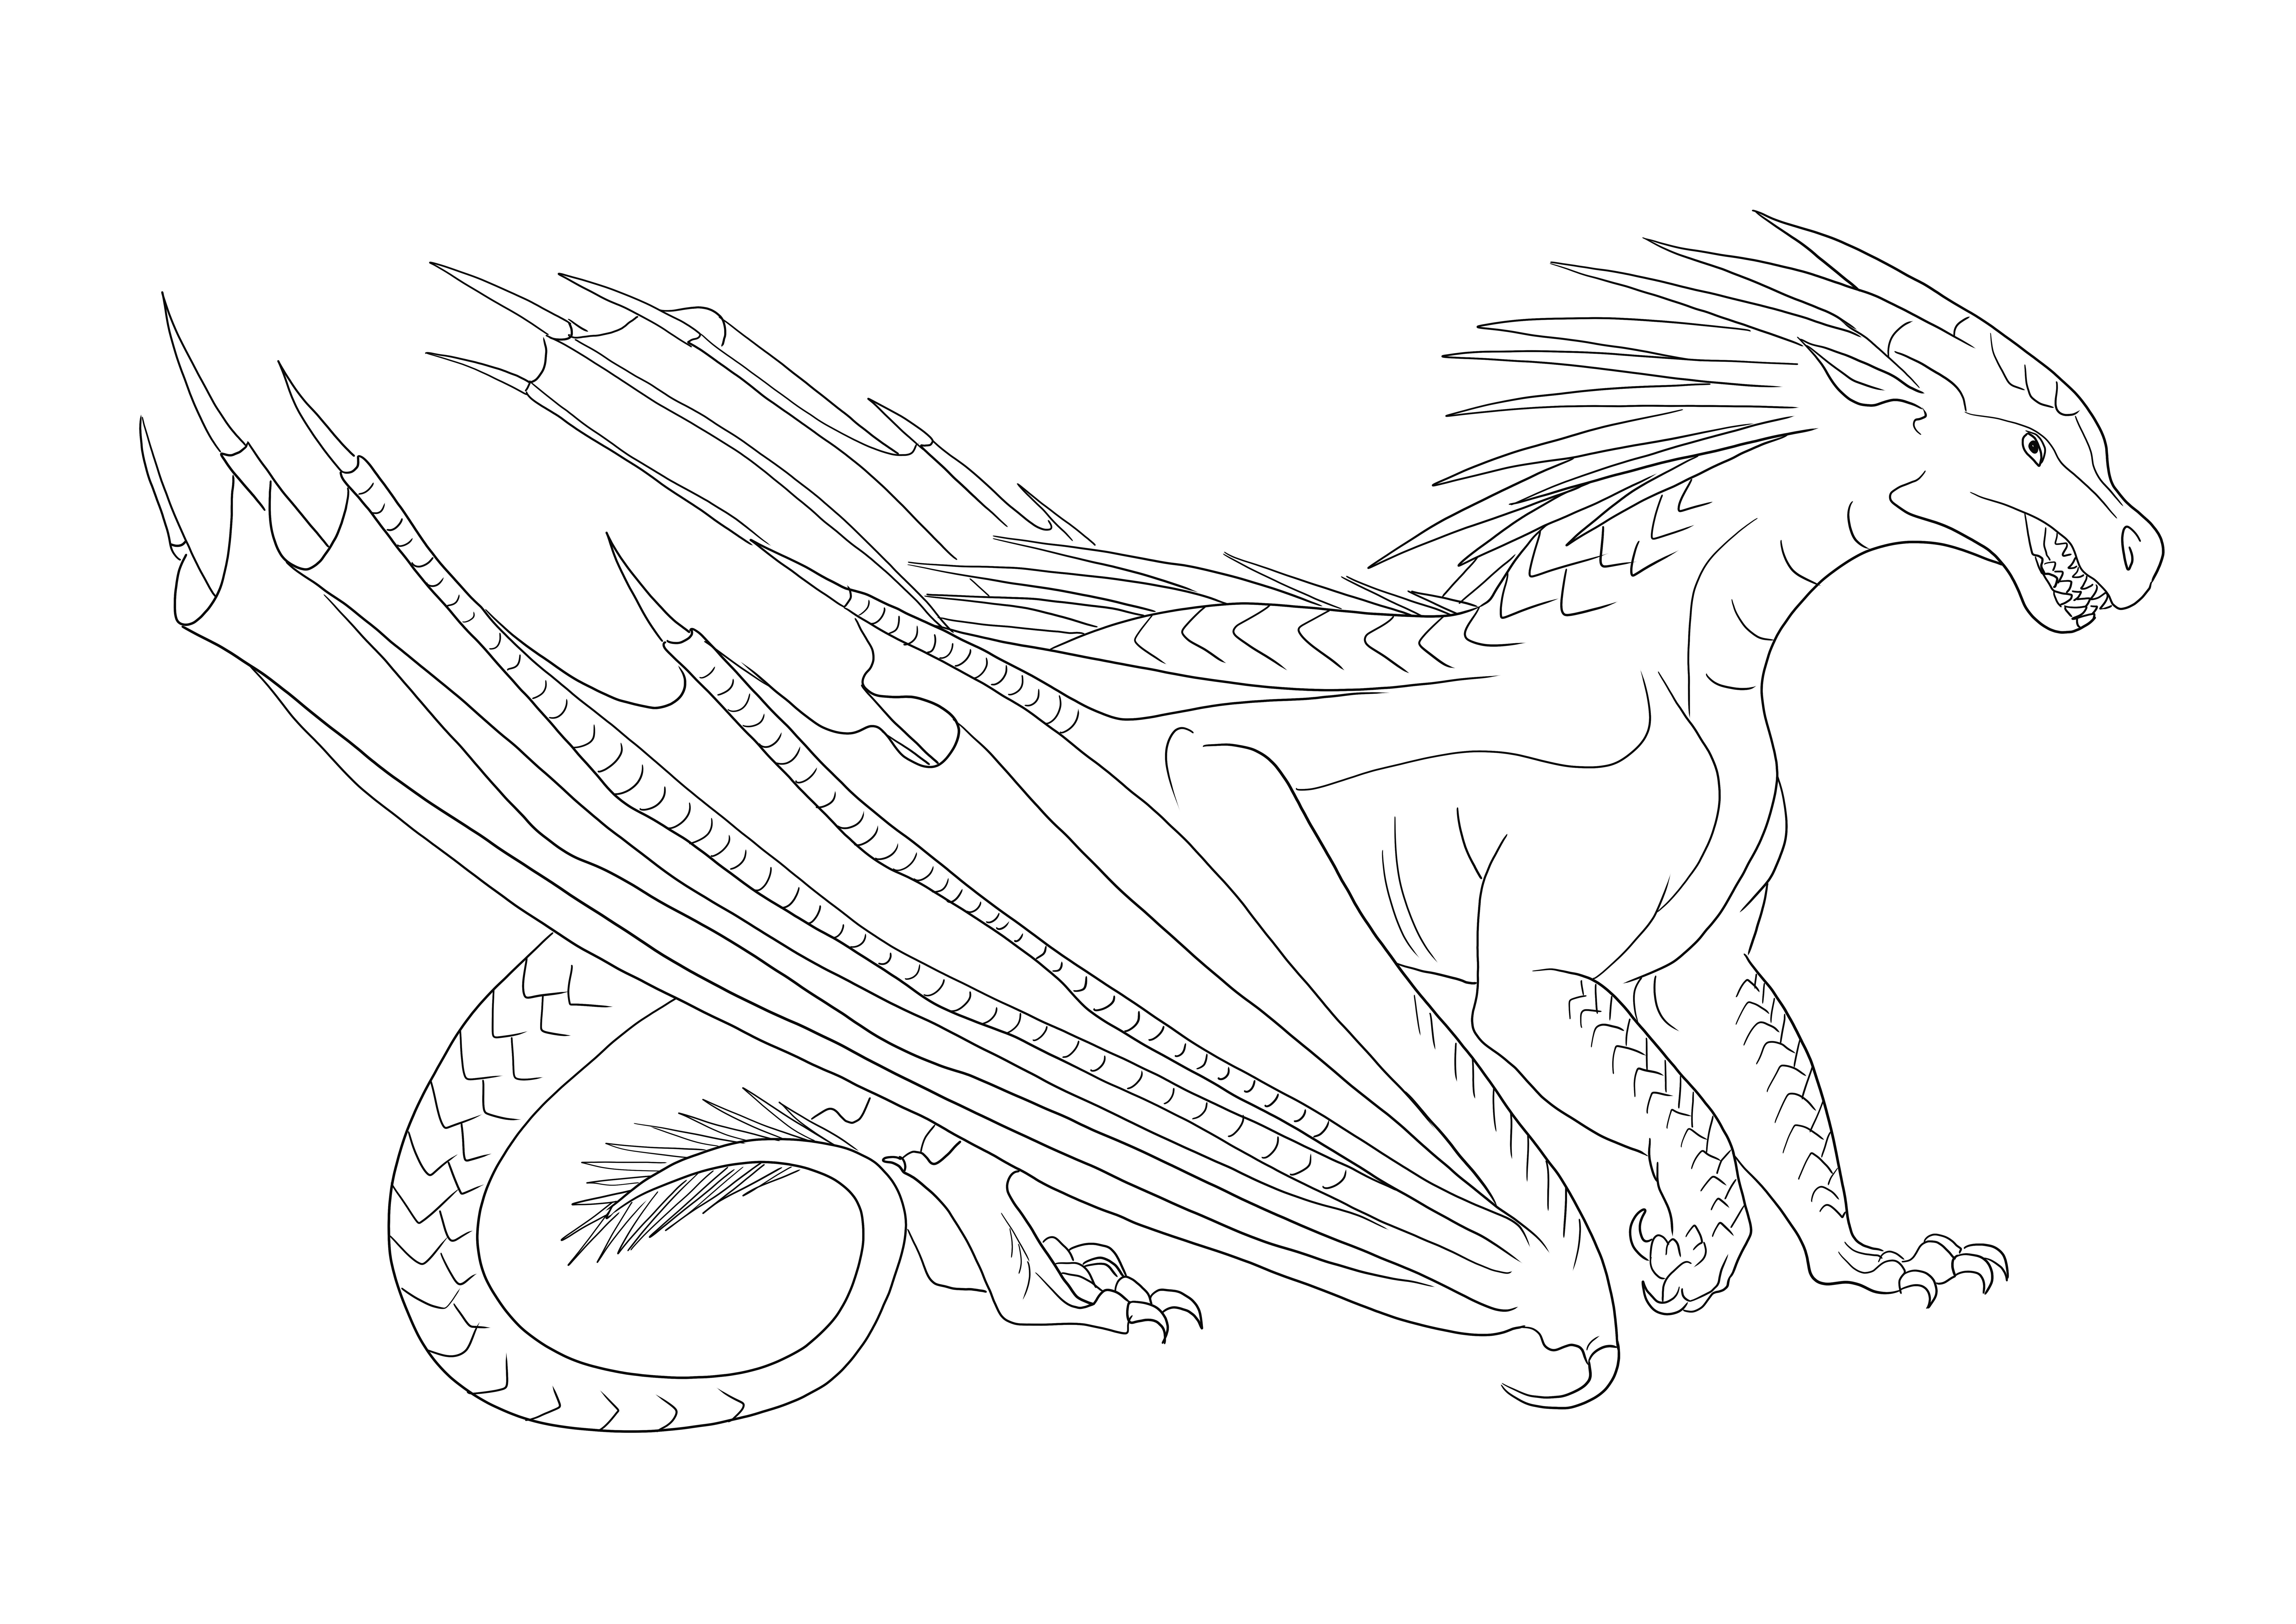 Icewing Dragon dari lembar mewarnai Wings of Fire untuk pencetakan gratis